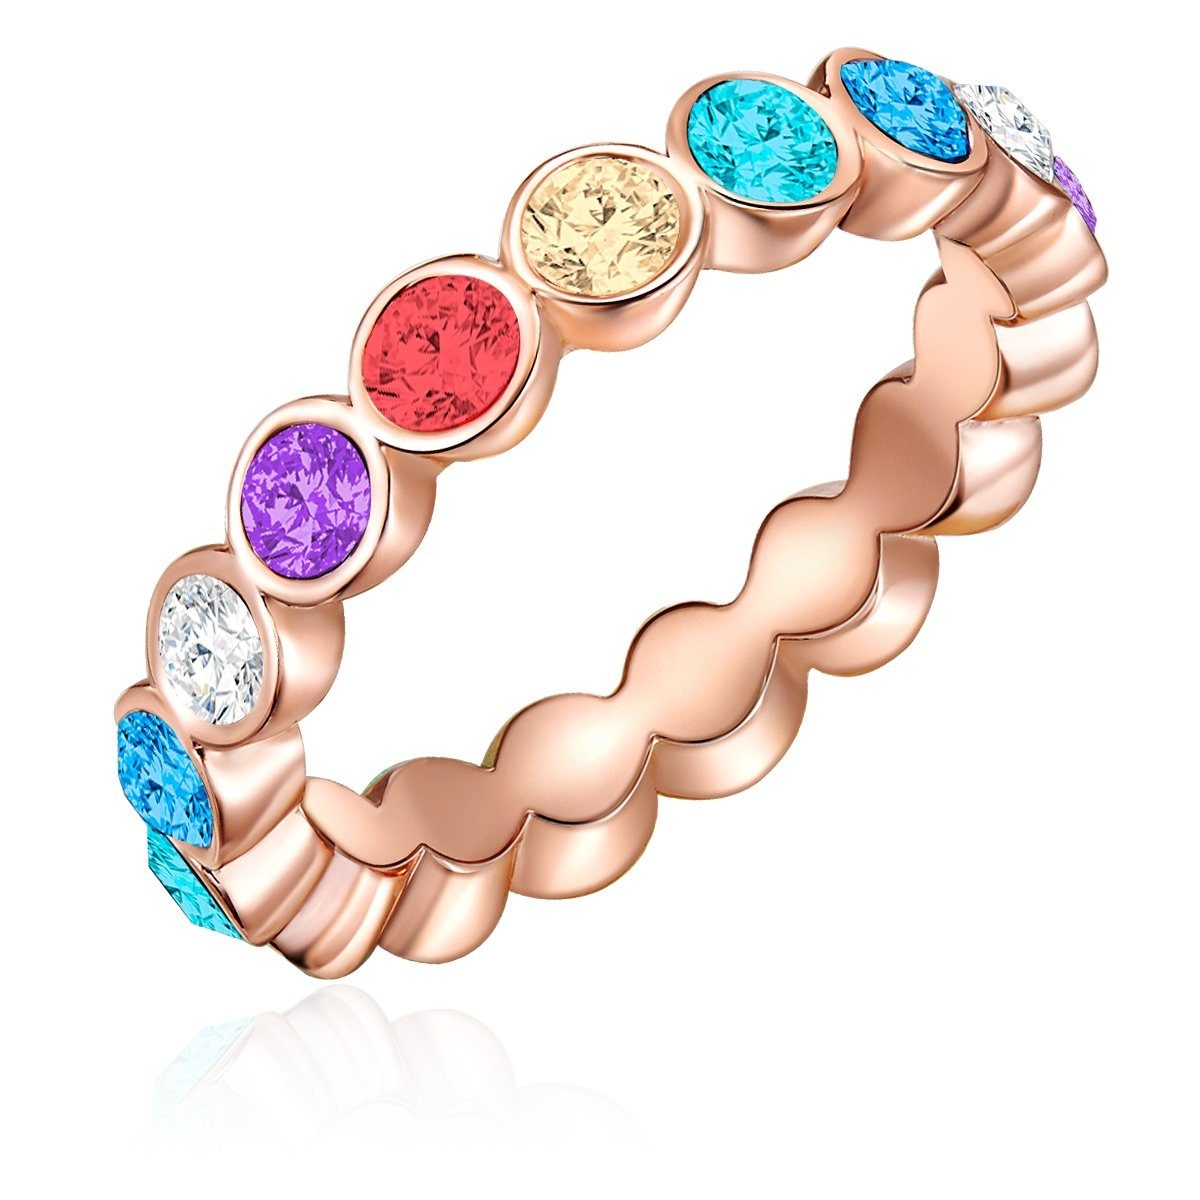 Lulu & Jane Fingerring Ring roségold verziert mit Kristallen von Swarovski® bunt